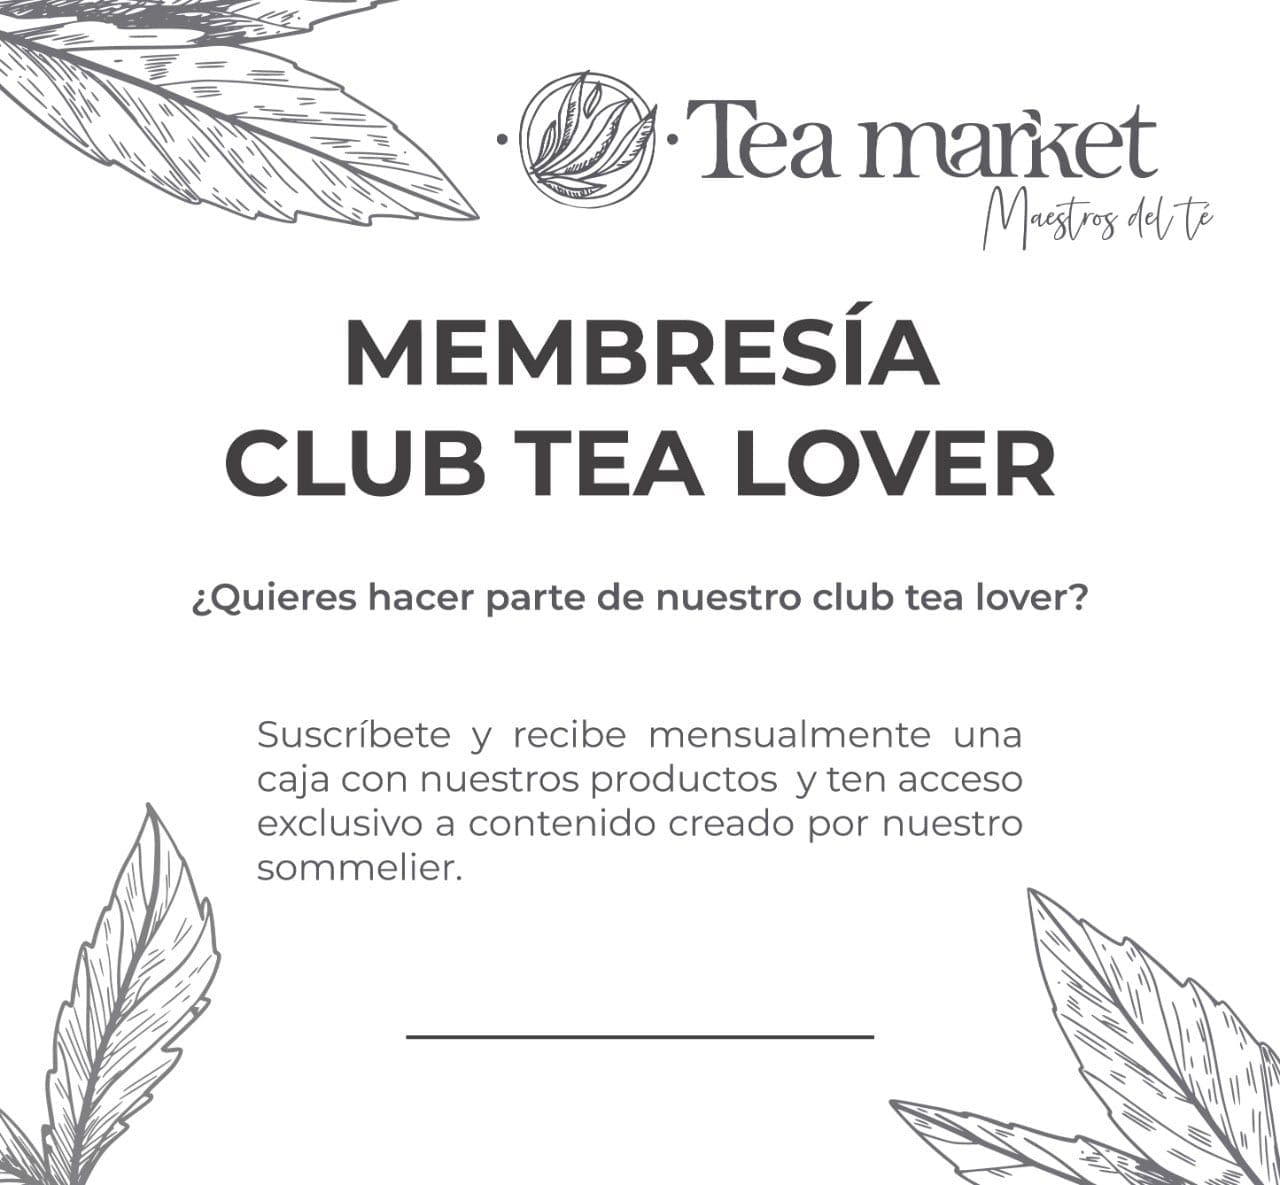 Sociedad del Té – Membresía Tea Market